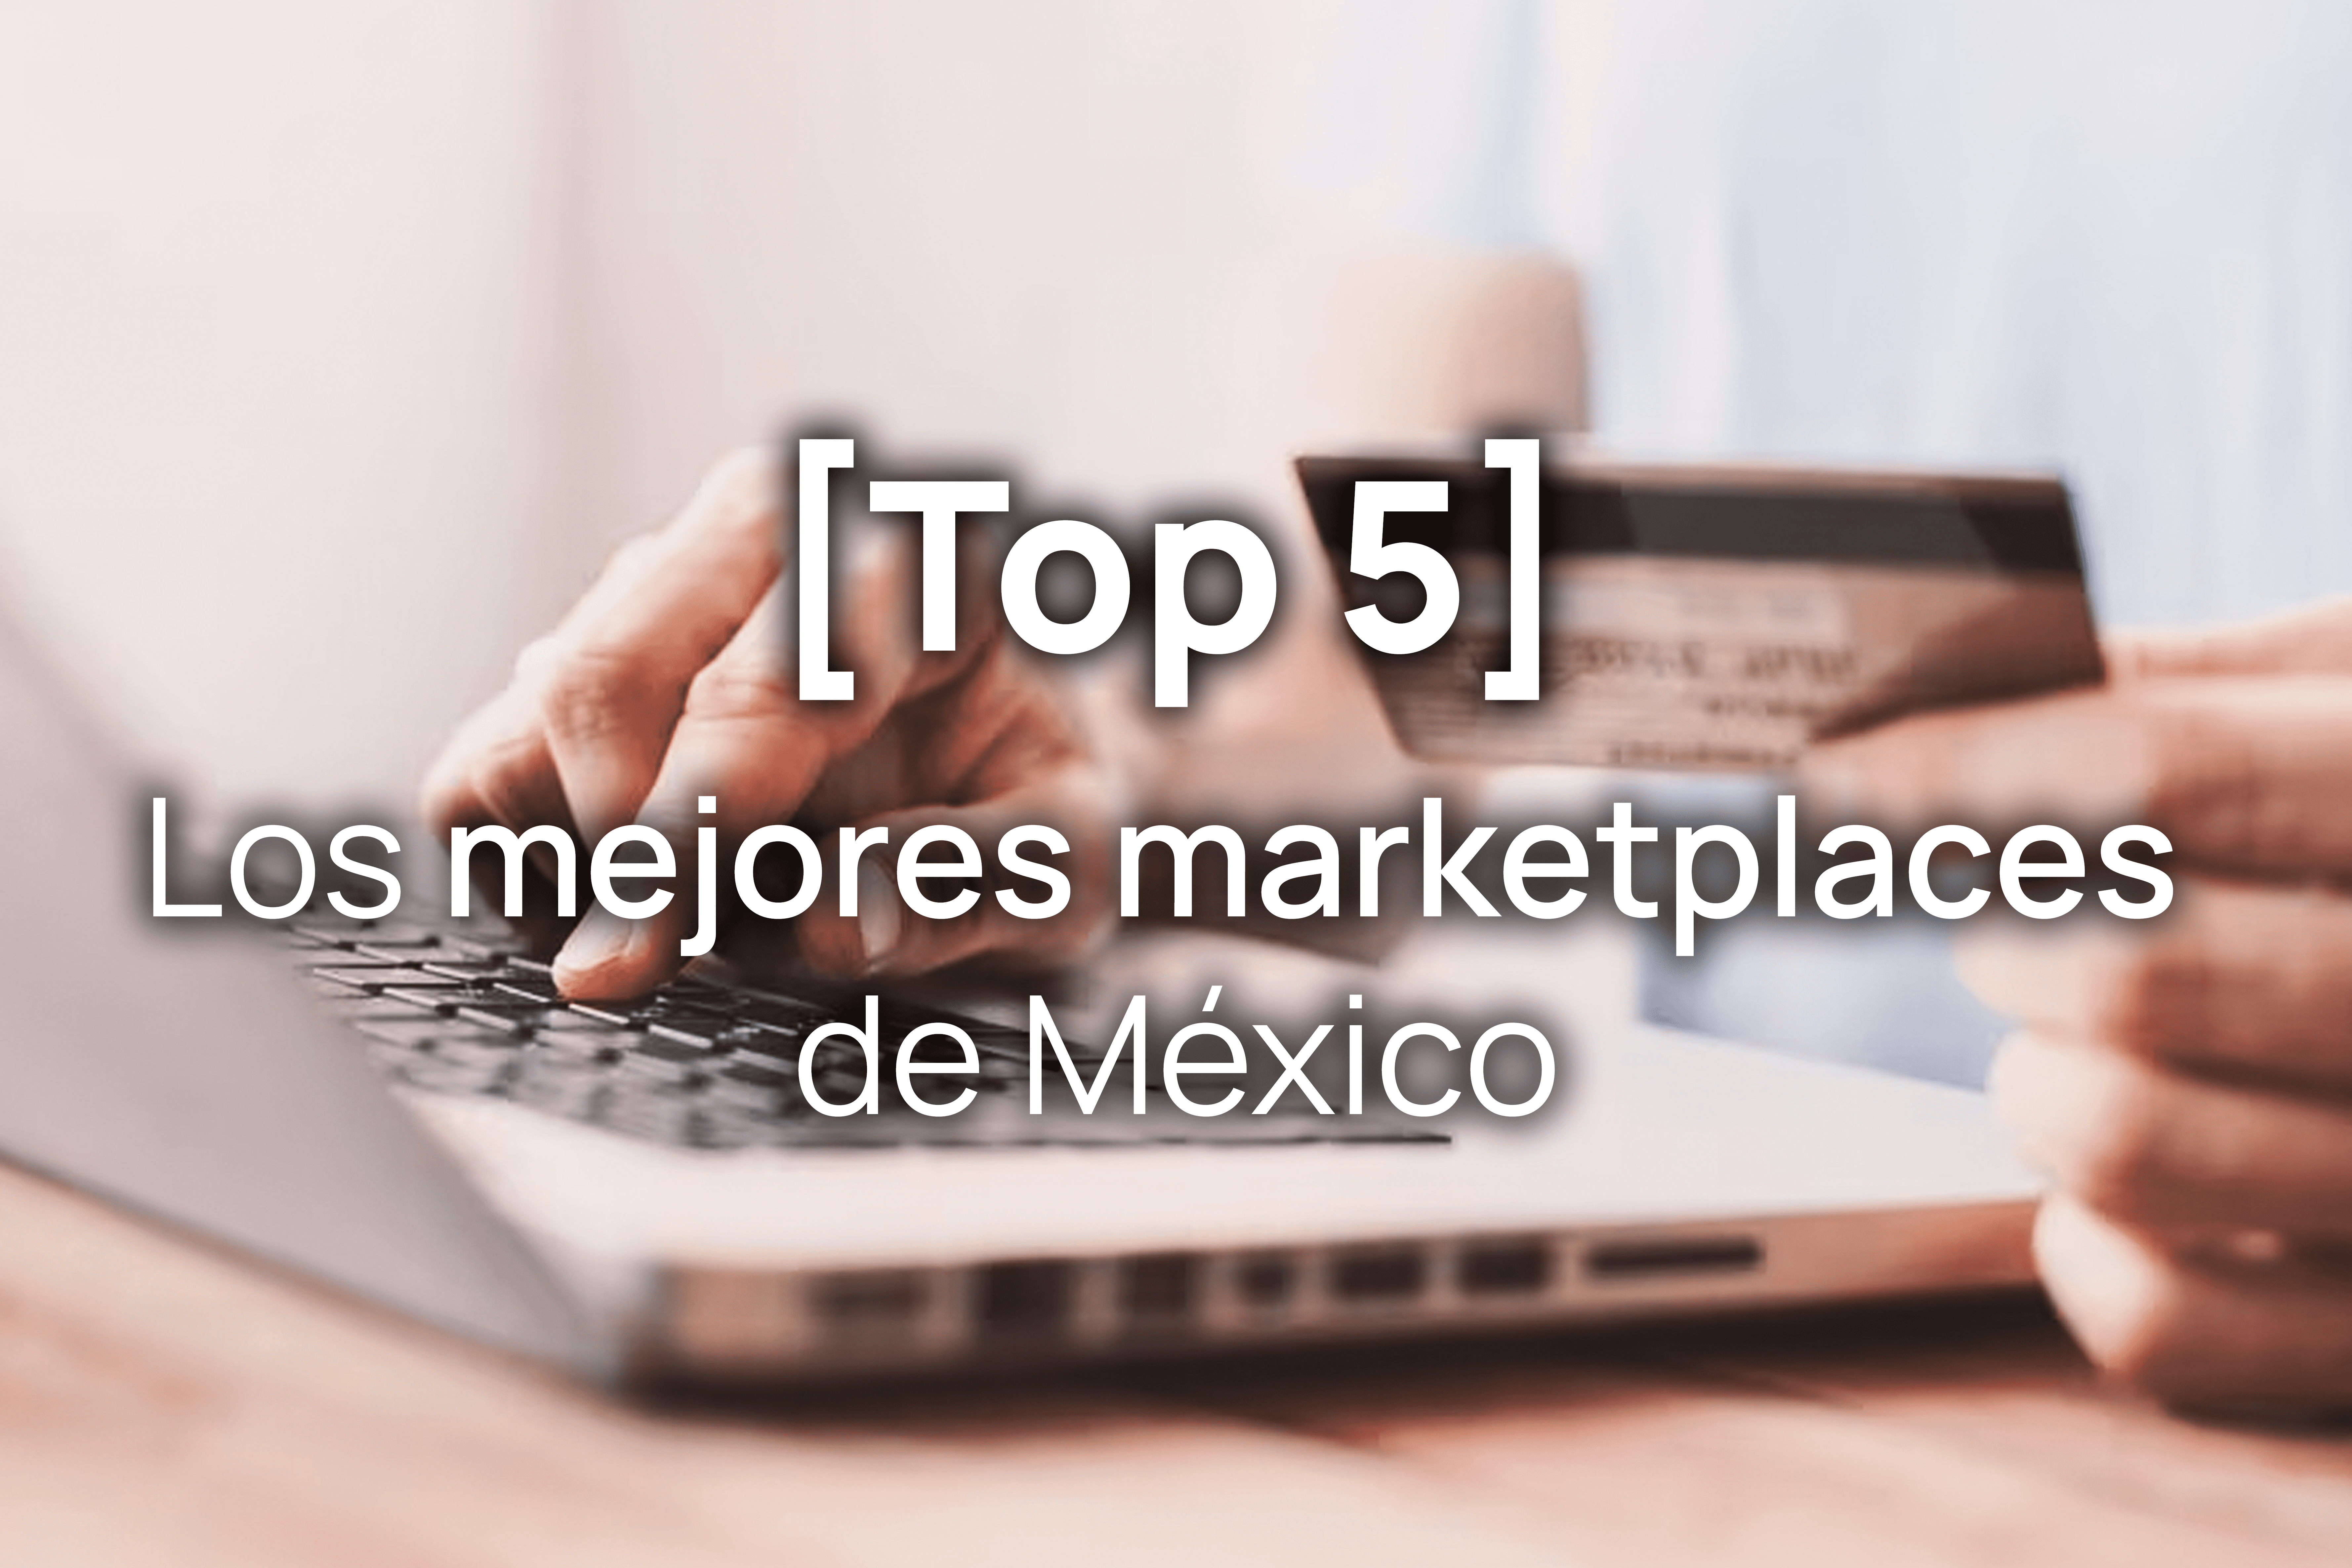 Los mejores marketplaces de México